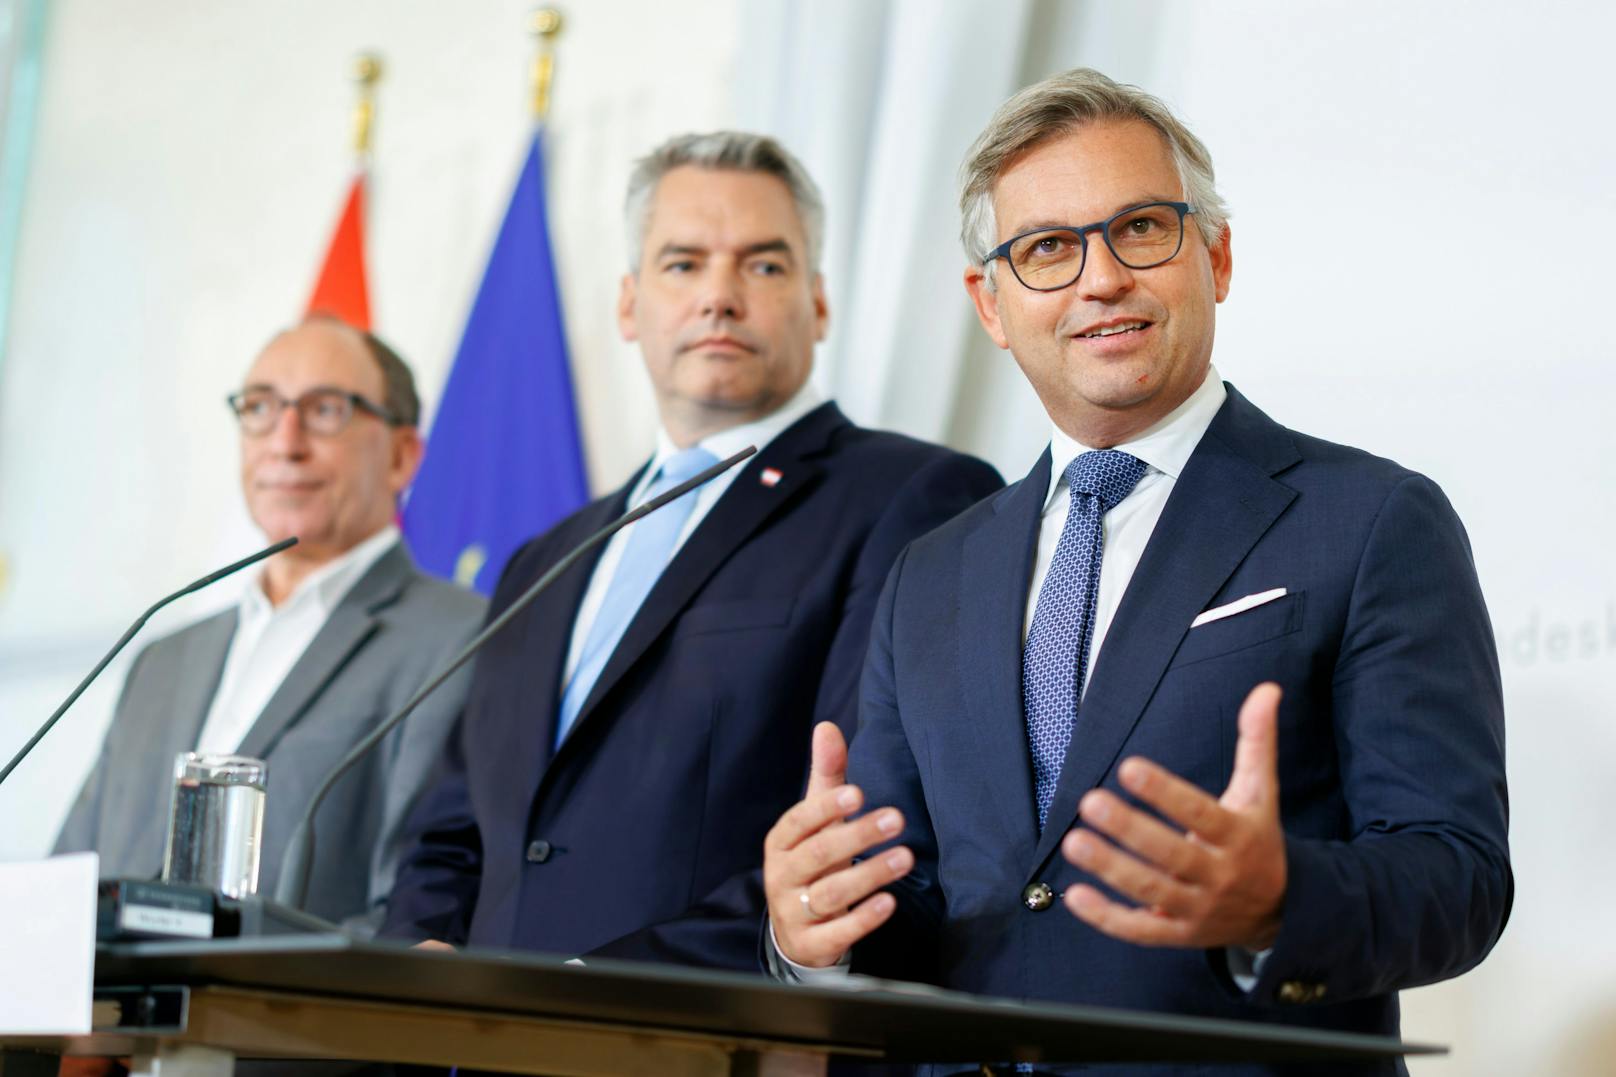 Am 15. September gab Bundeskanzler Karl Nehammer gemeinsam mit Bundesminister Magnus Brunner und Bundesminister Johannes Rauch eine Pressekonferenz zur Abschaffung der kalten Progression.